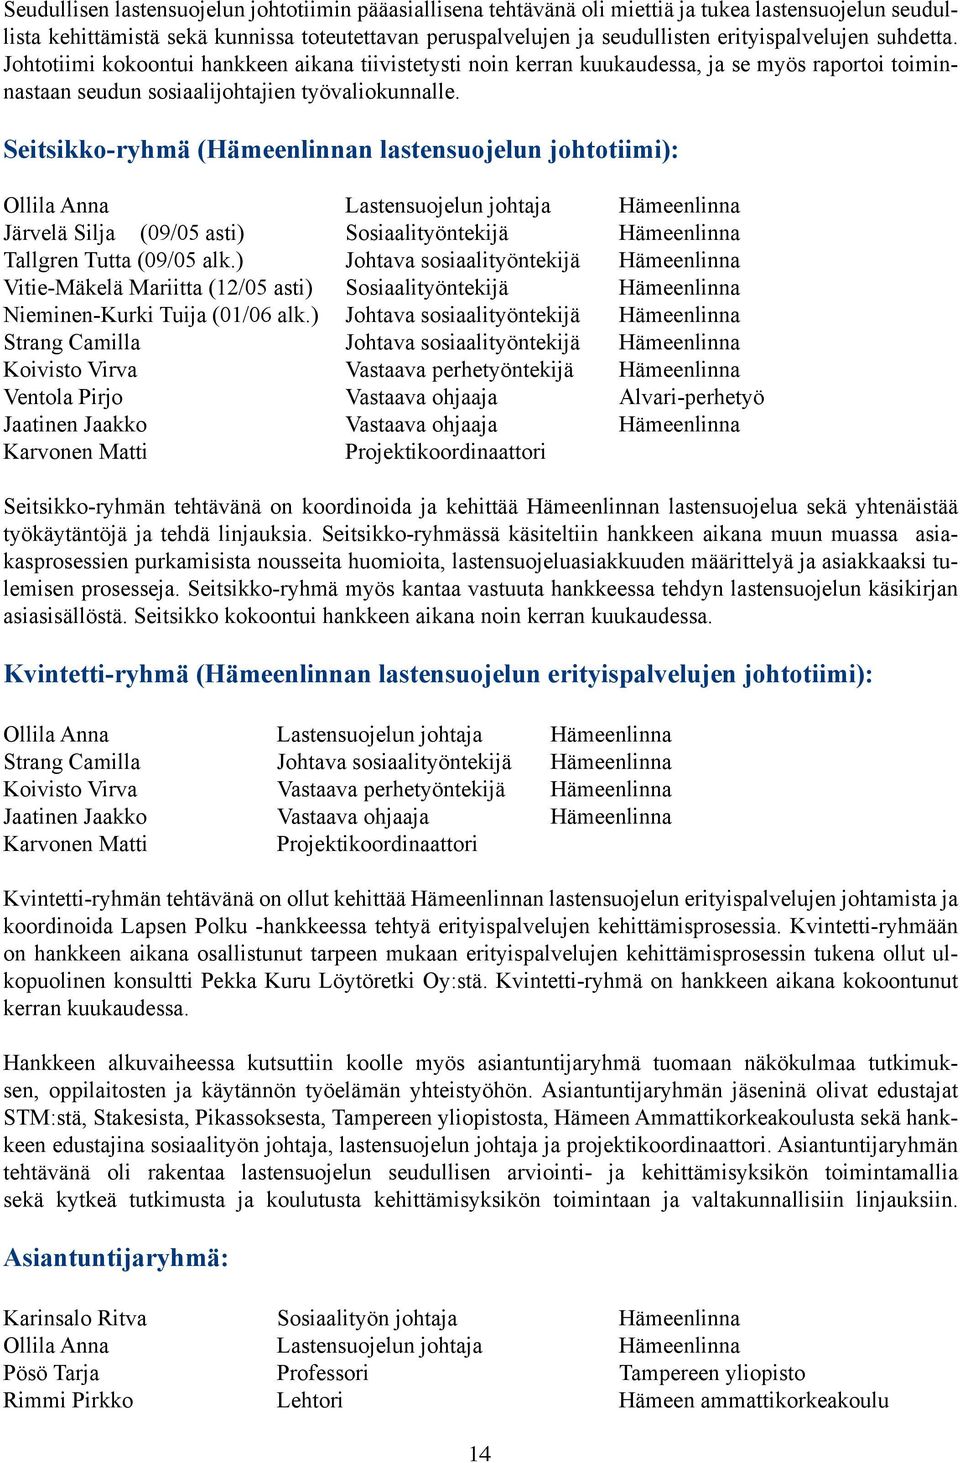 Seitsikko-ryhmä (Hämeenlinnan lastensuojelun johtotiimi): Ollila Anna Lastensuojelun johtaja Hämeenlinna Järvelä Silja (09/05 asti) Sosiaalityöntekijä Hämeenlinna Tallgren Tutta (09/05 alk.